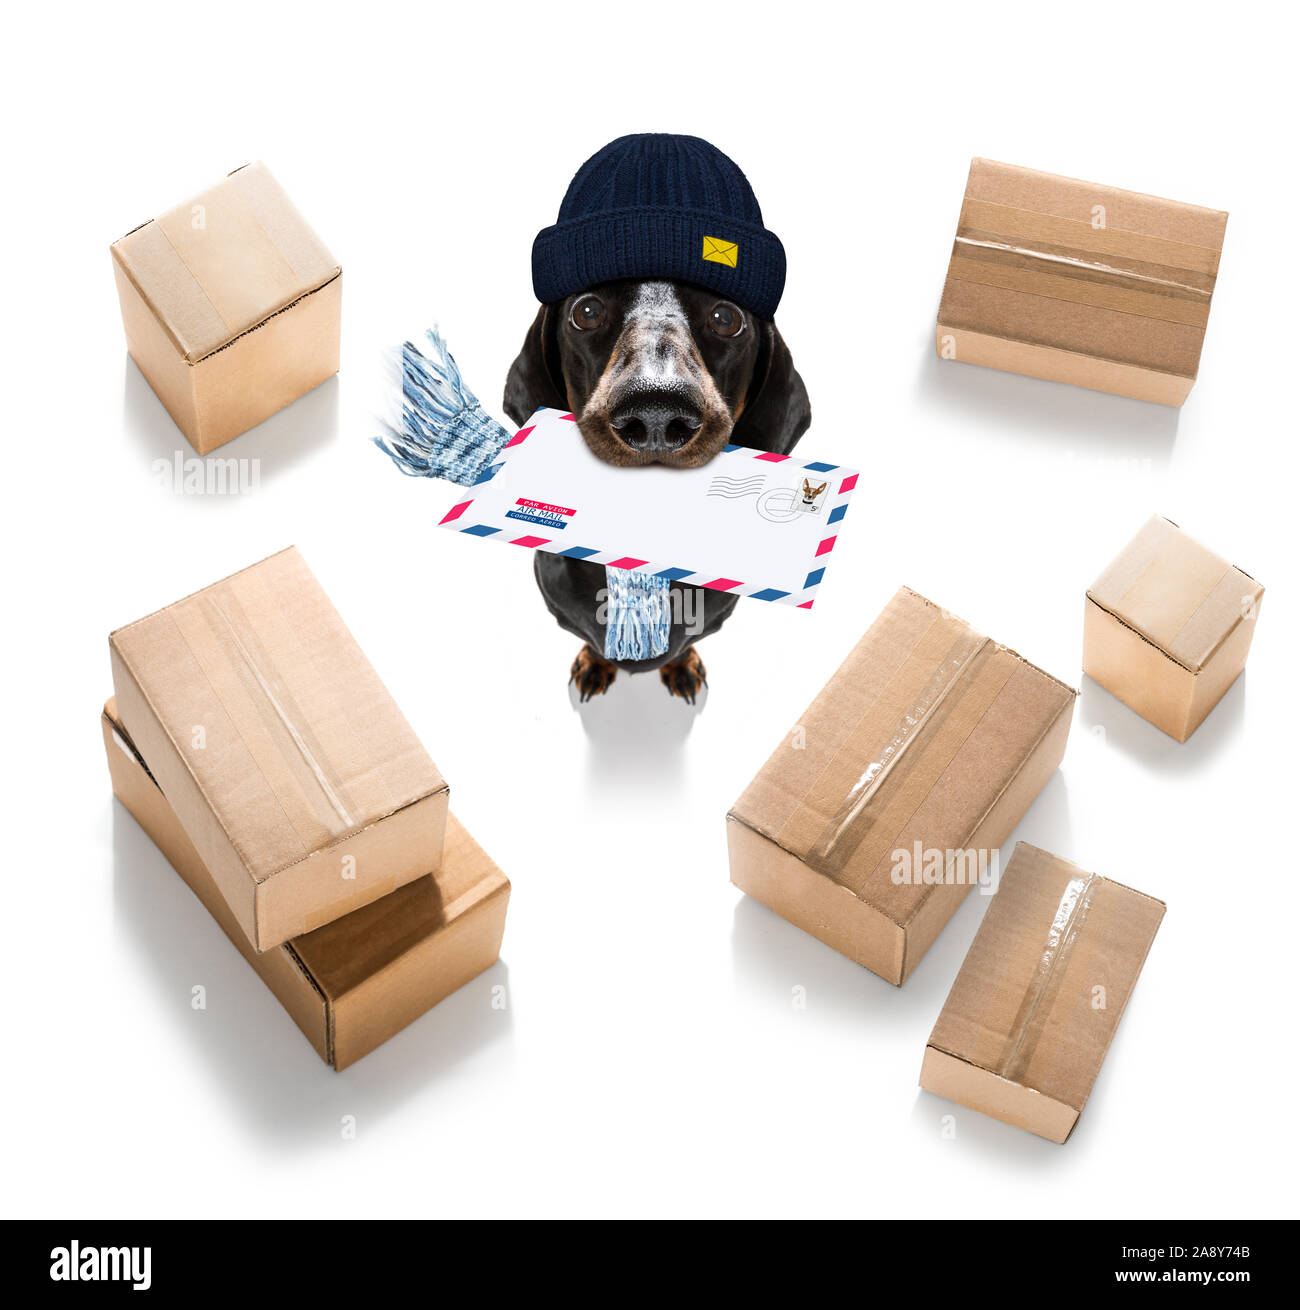 Postman teckel chien saucisse offrant une grande enveloppe vide blanc vide, avec des boîtes et paquets Banque D'Images